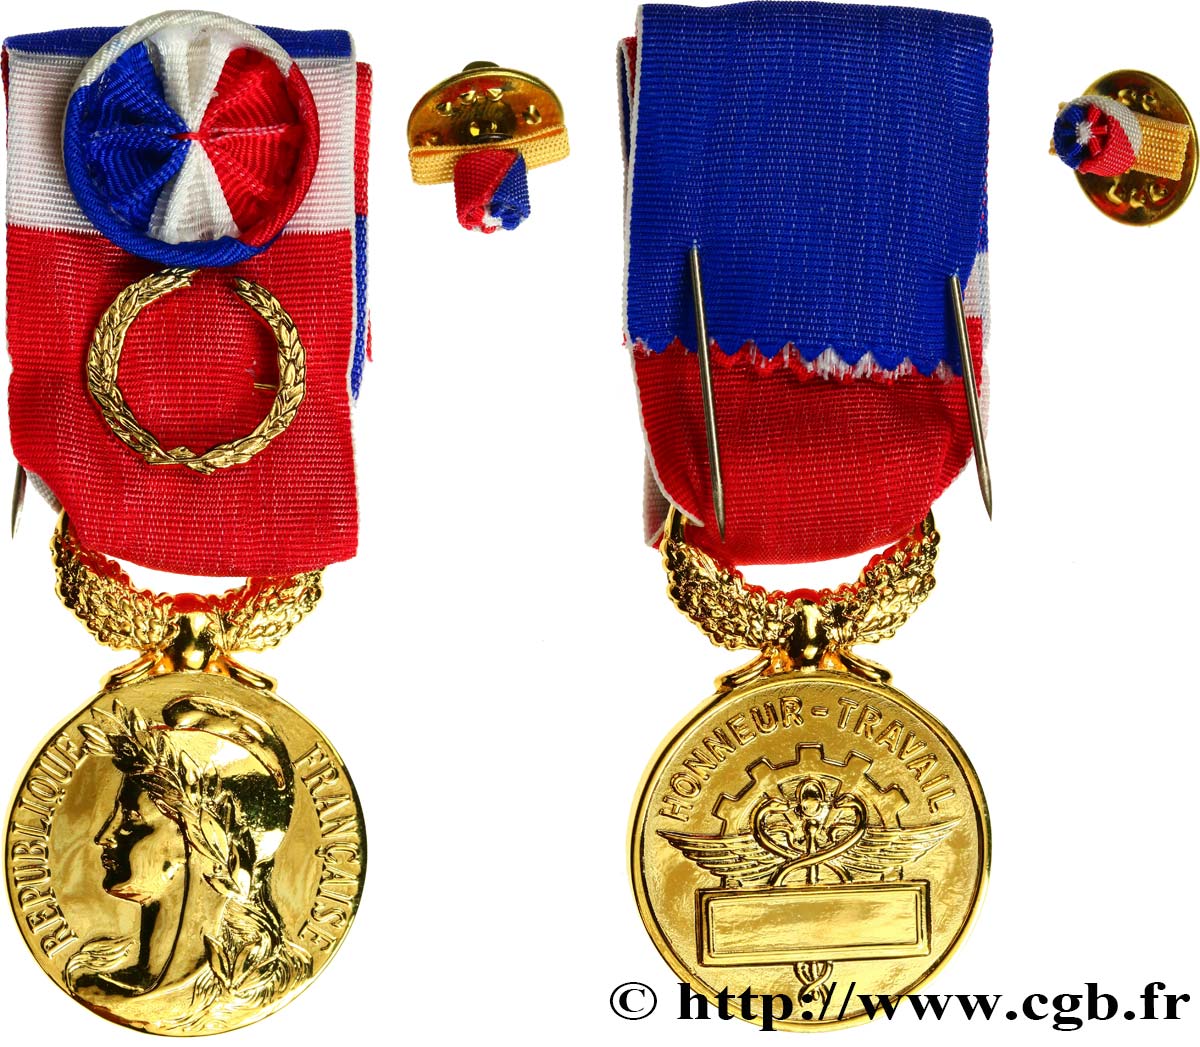 V REPUBLIC Médaille Grand or, Honneur et Travail AU